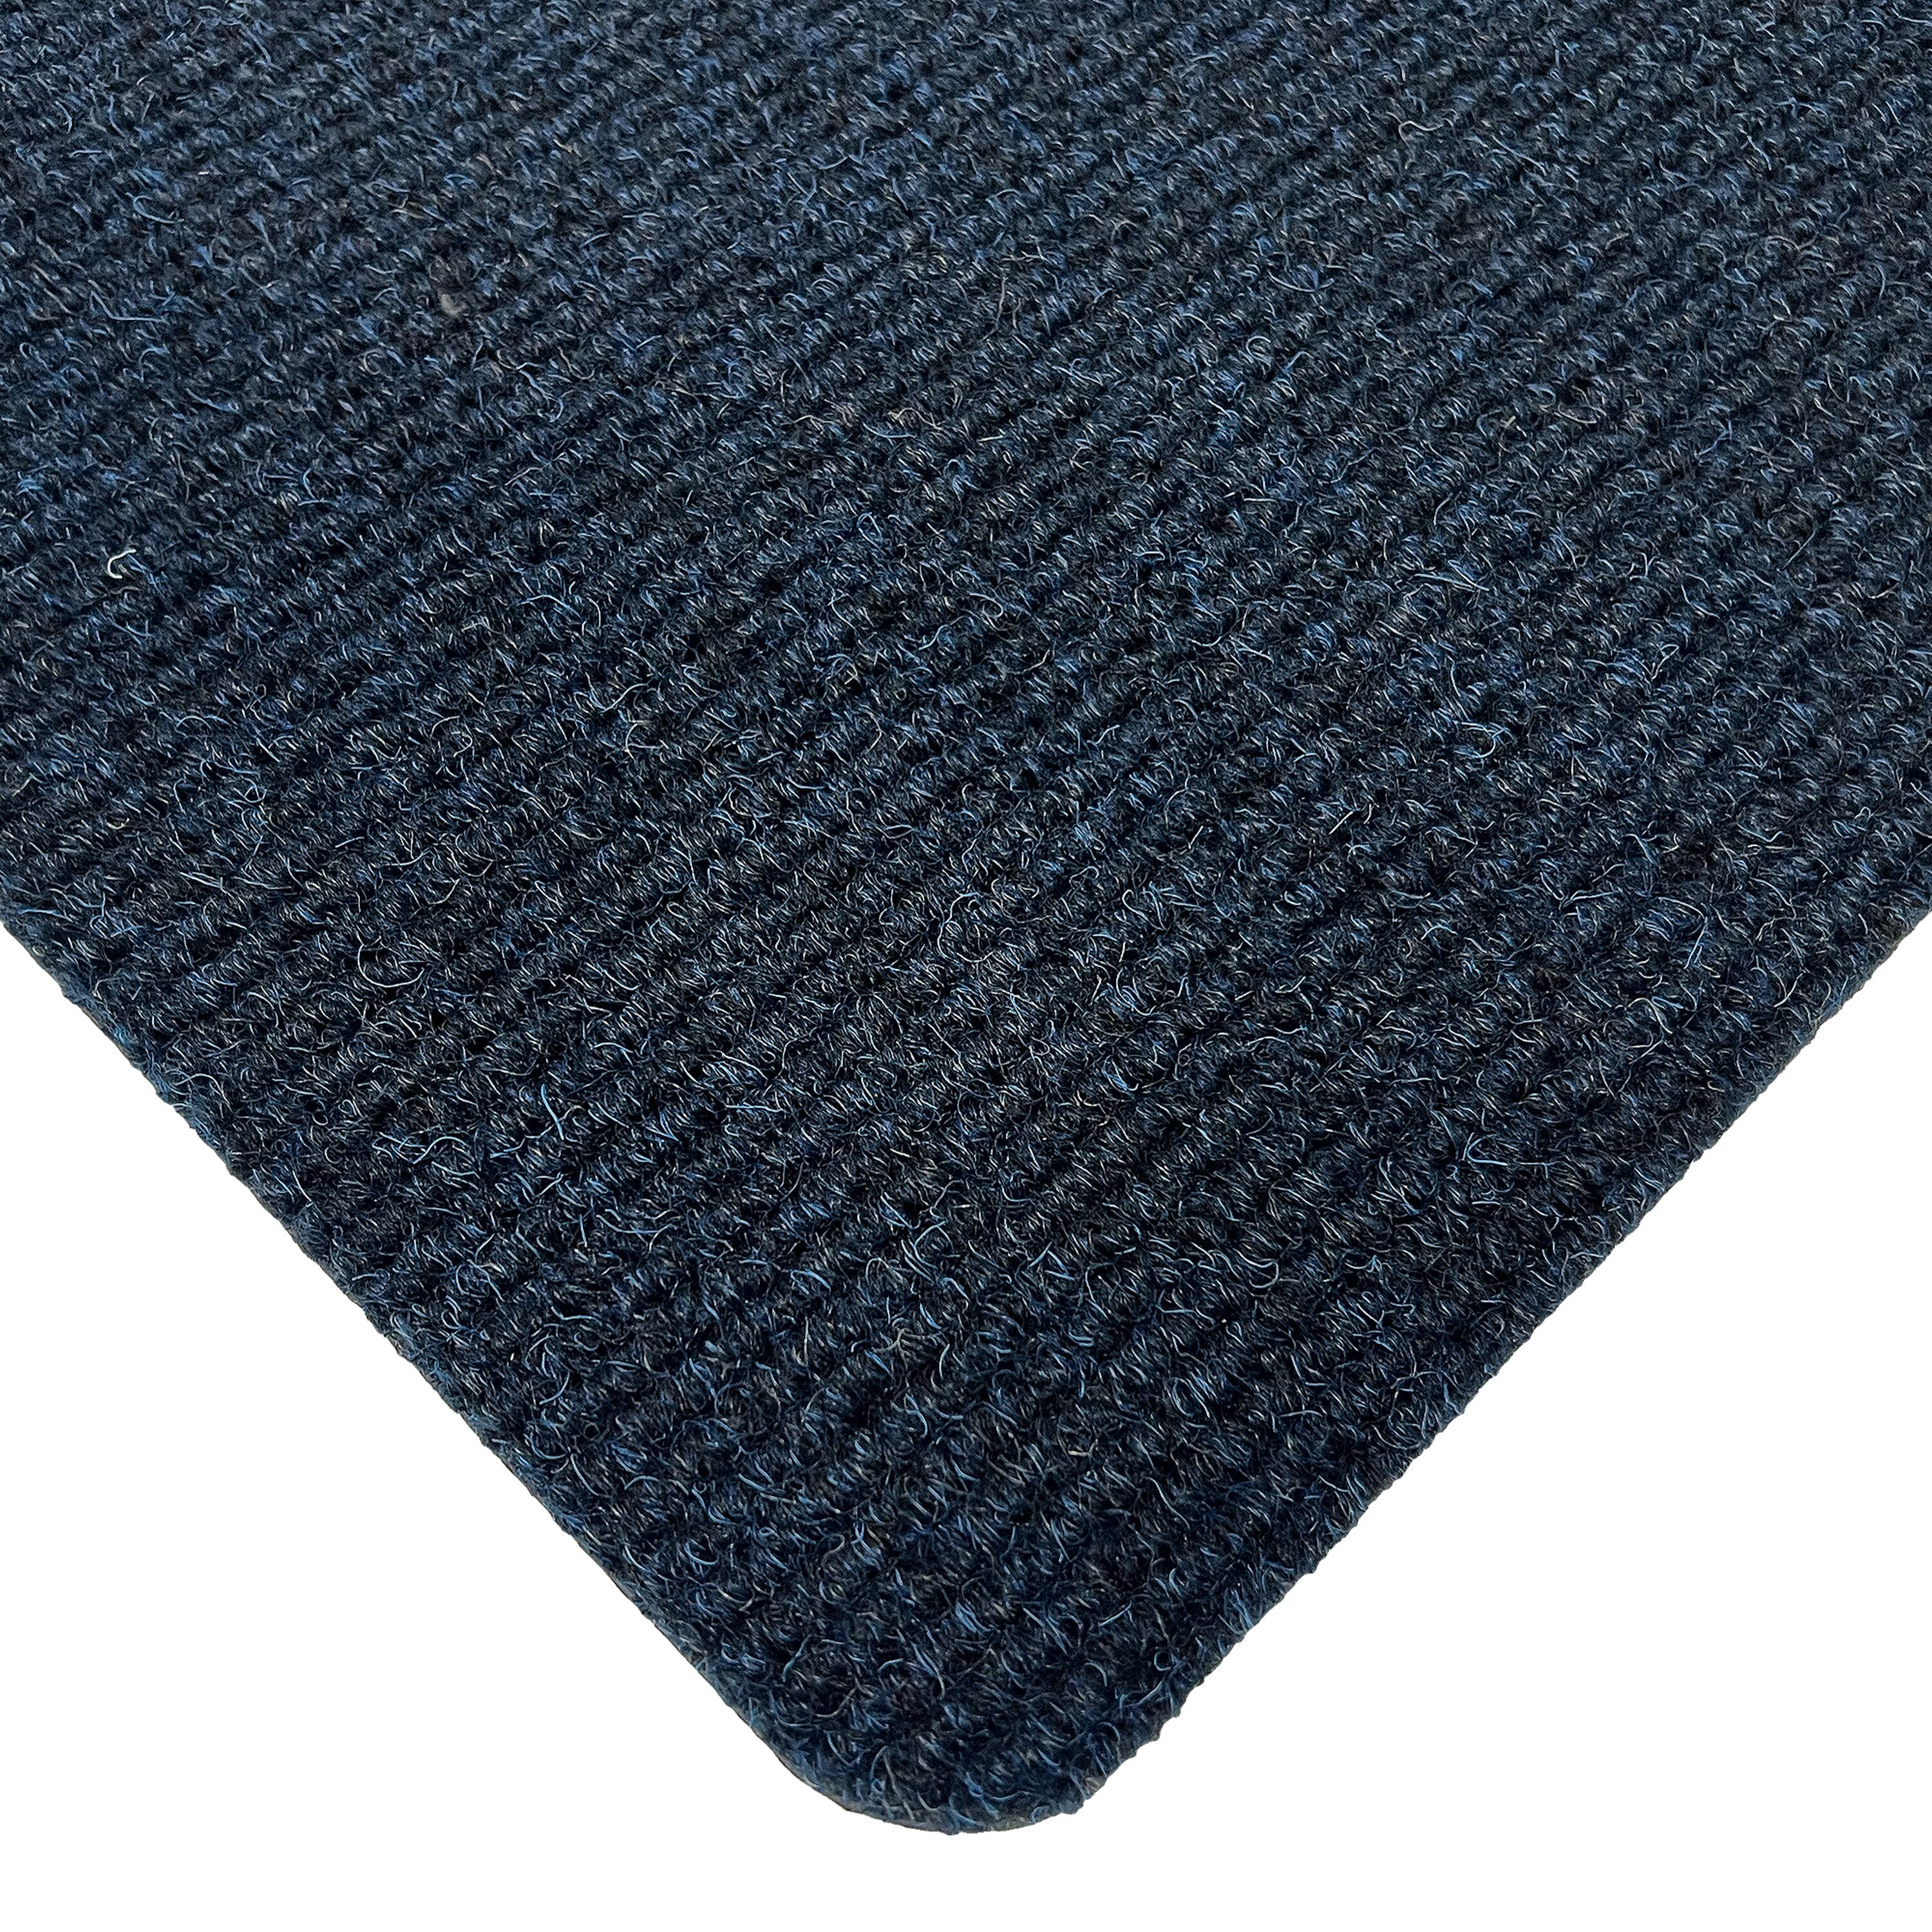 Modrá vstupní rohož (metráž) FLOMA Mega Rib - délka 1 cm, výška 1,3 cm